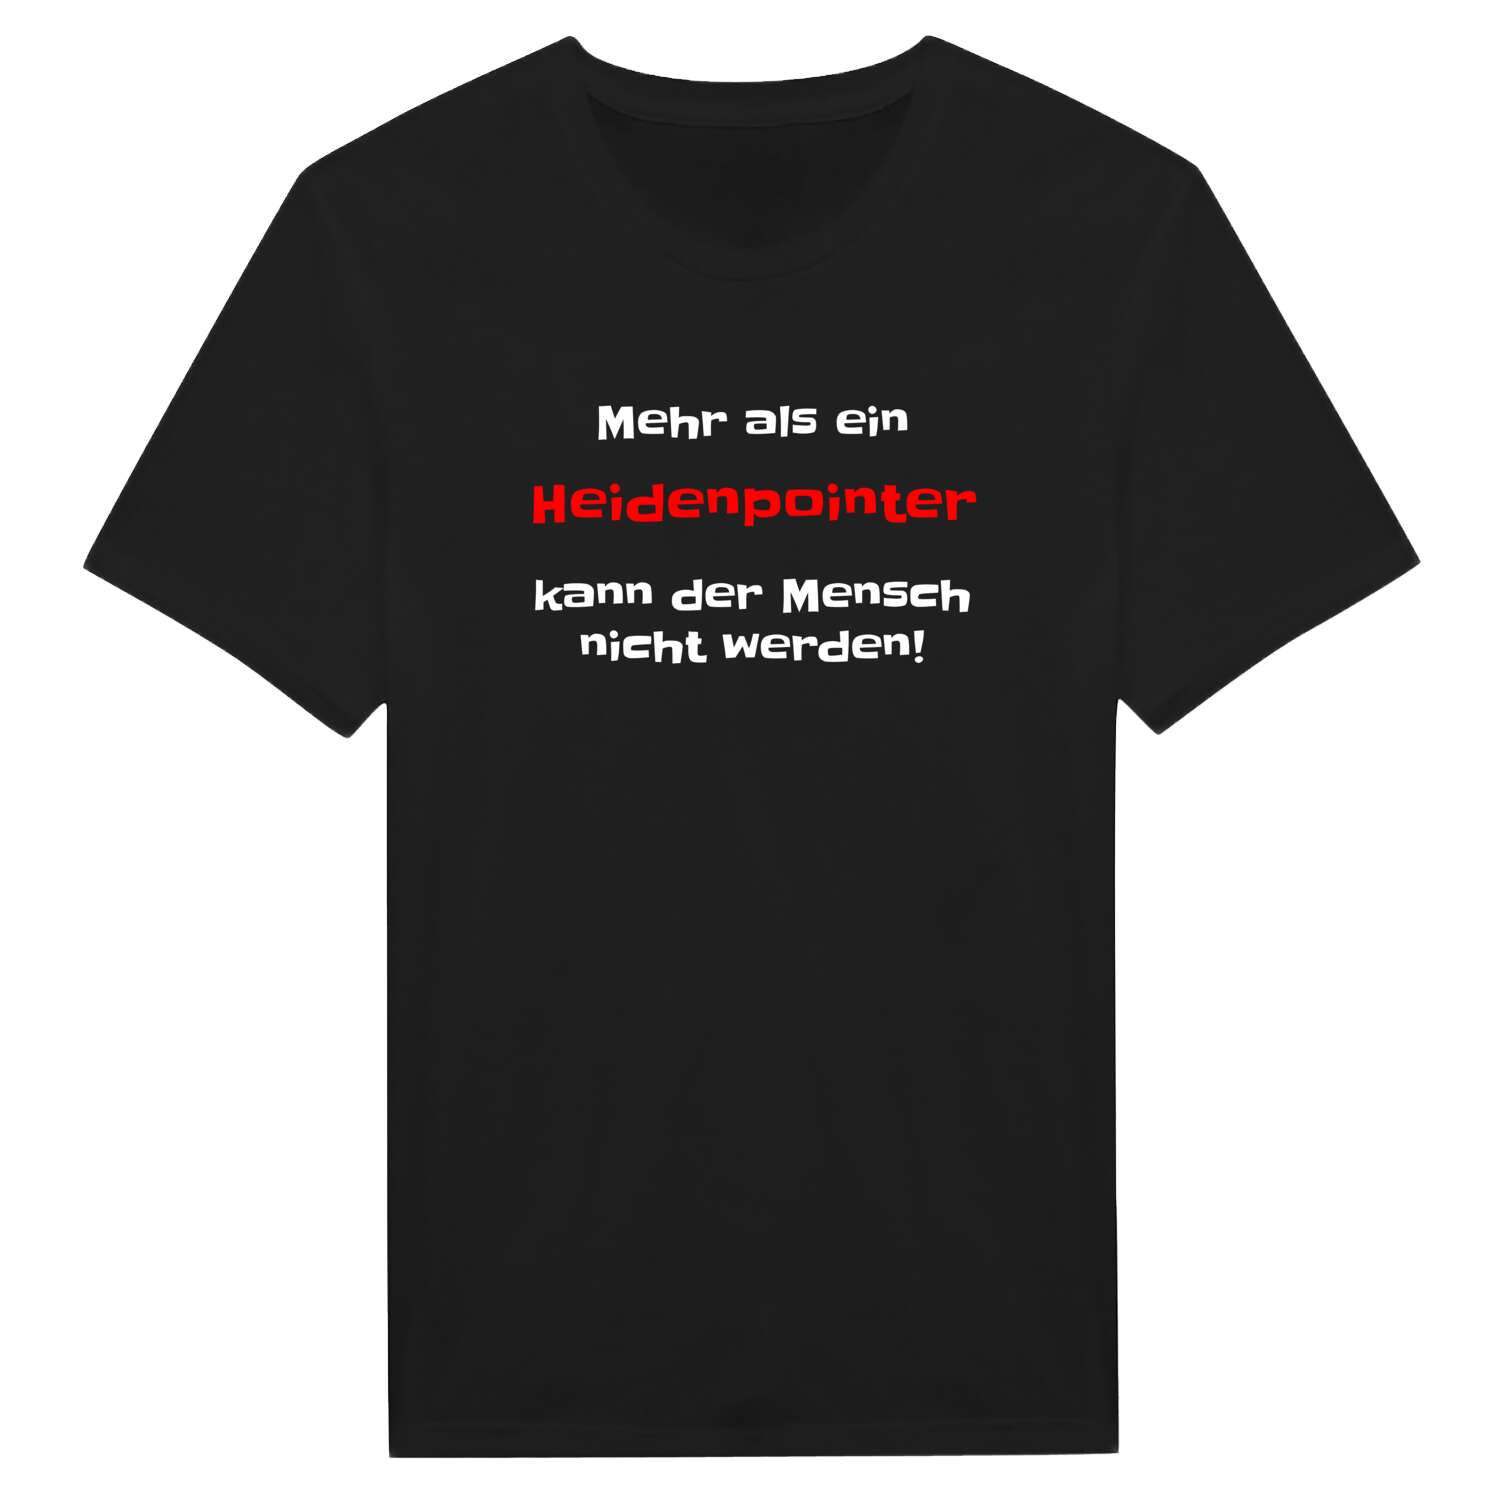 Heidenpoint T-Shirt »Mehr als ein«